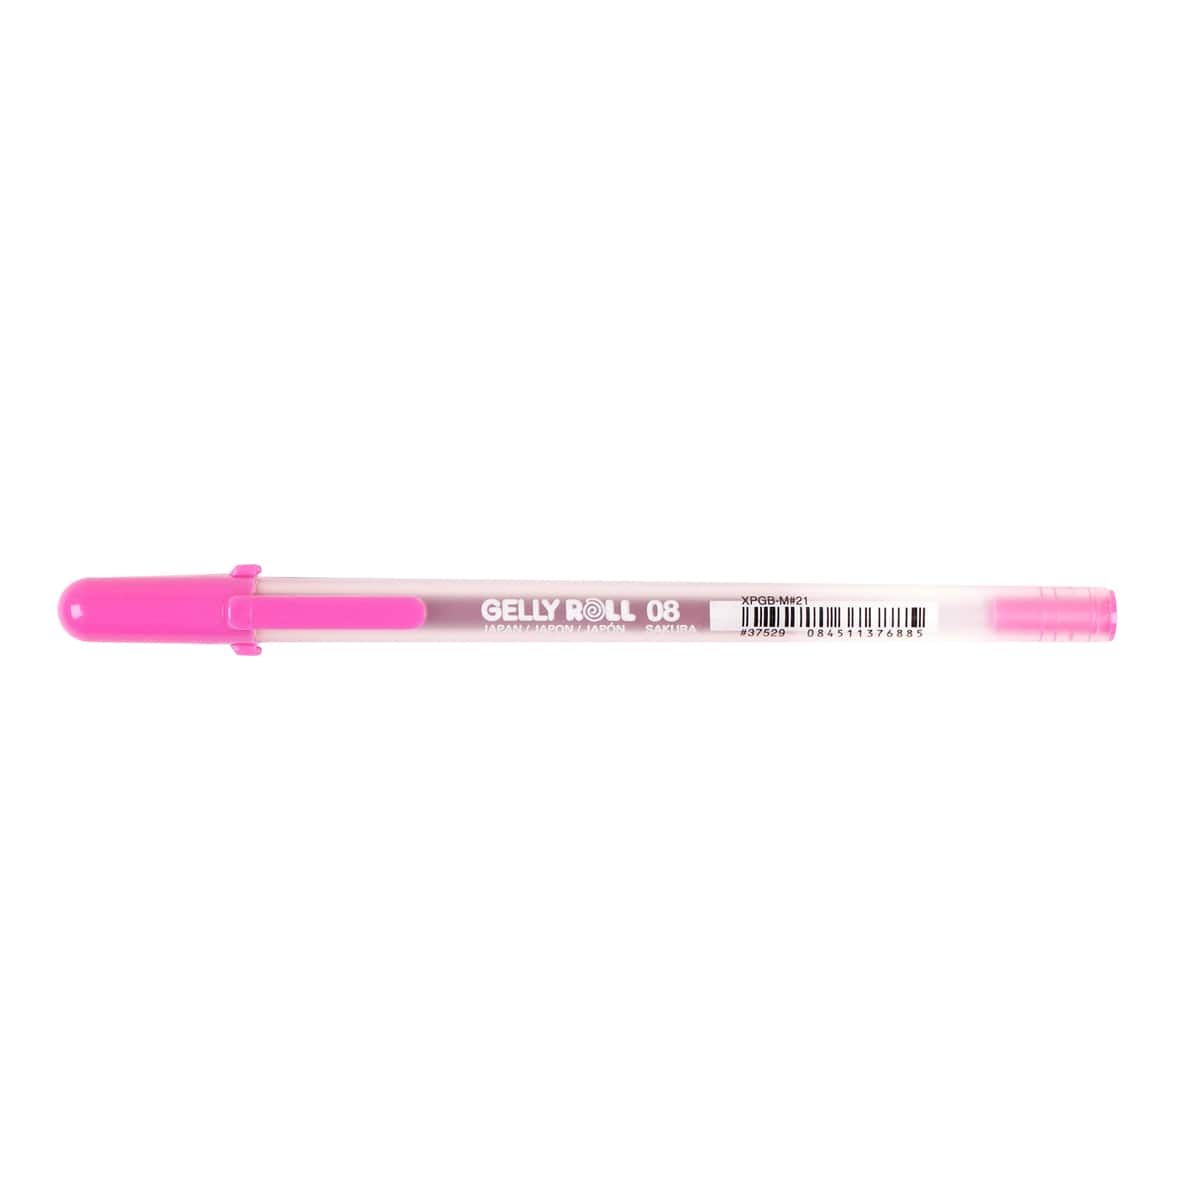 Sakura Gel Pen, Perfect for Scrapbooking